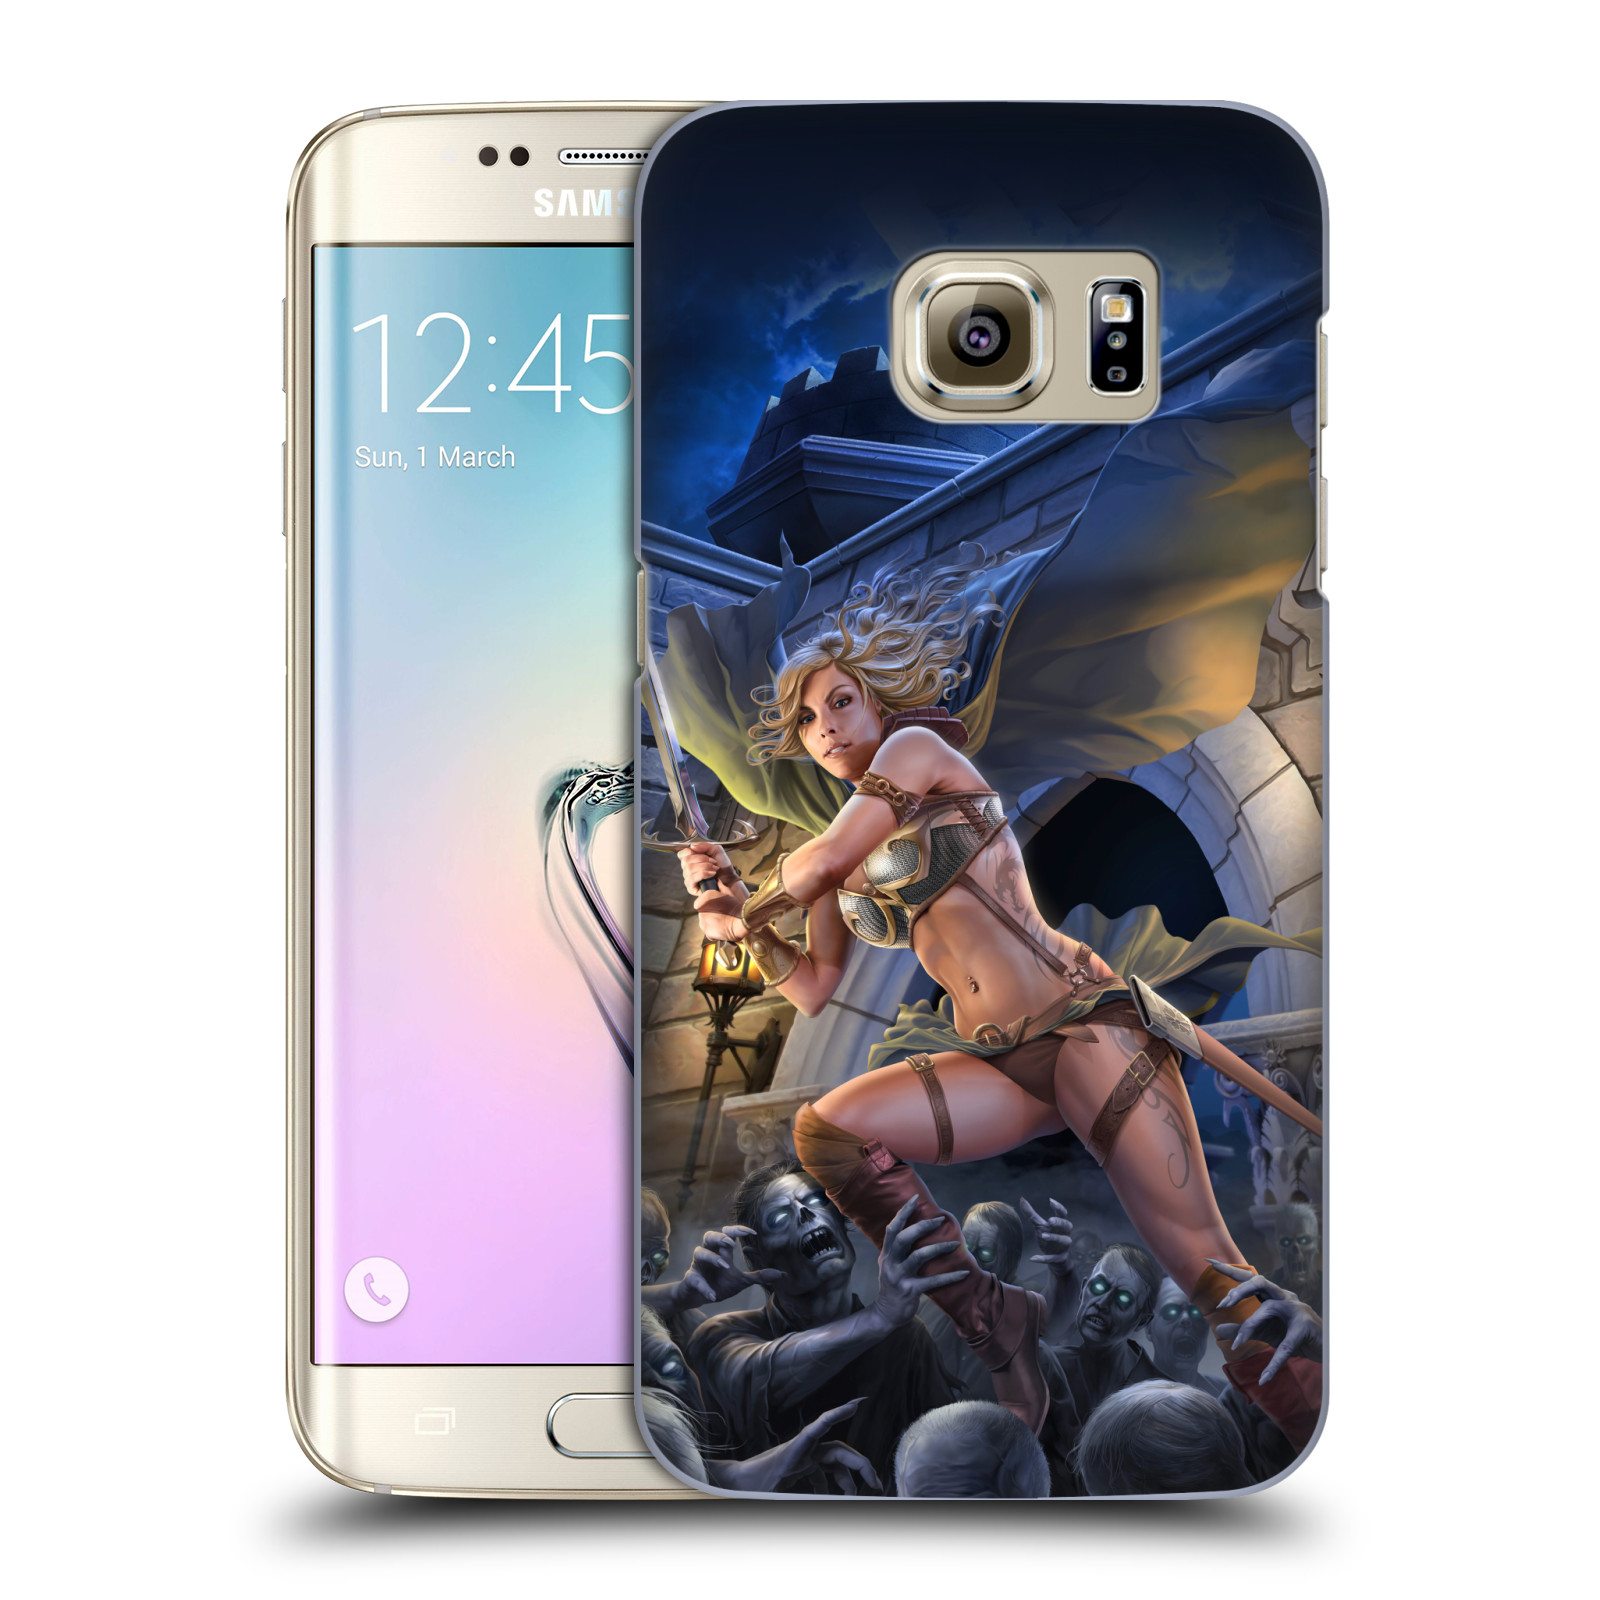 Pouzdro na mobil Samsung Galaxy S7 EDGE - HEAD CASE - Fantasy kresby Tom Wood - Princezna bojovnice a zombies